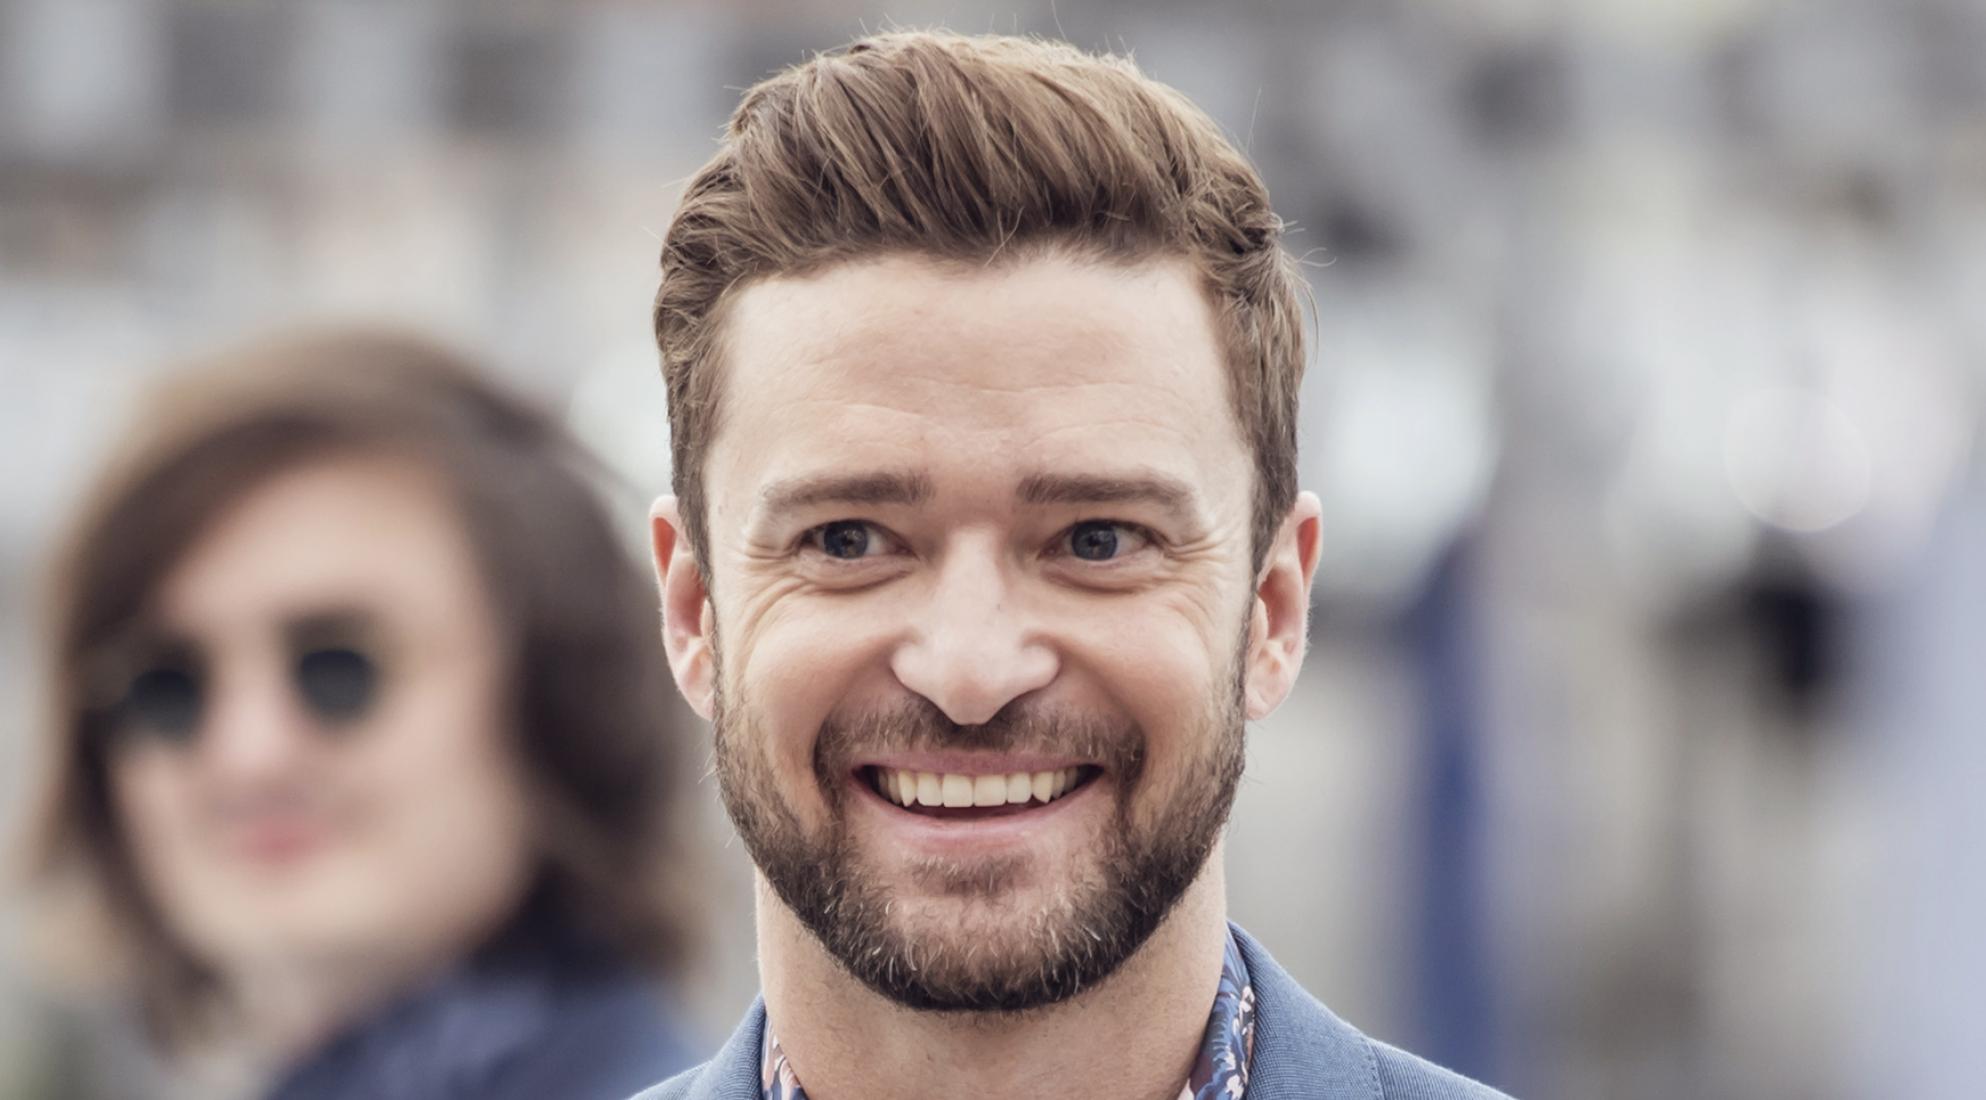 Justin Timberlake cancela conciertos de 2018 por cuerdas vocales lastimadas. Cusica Plus.